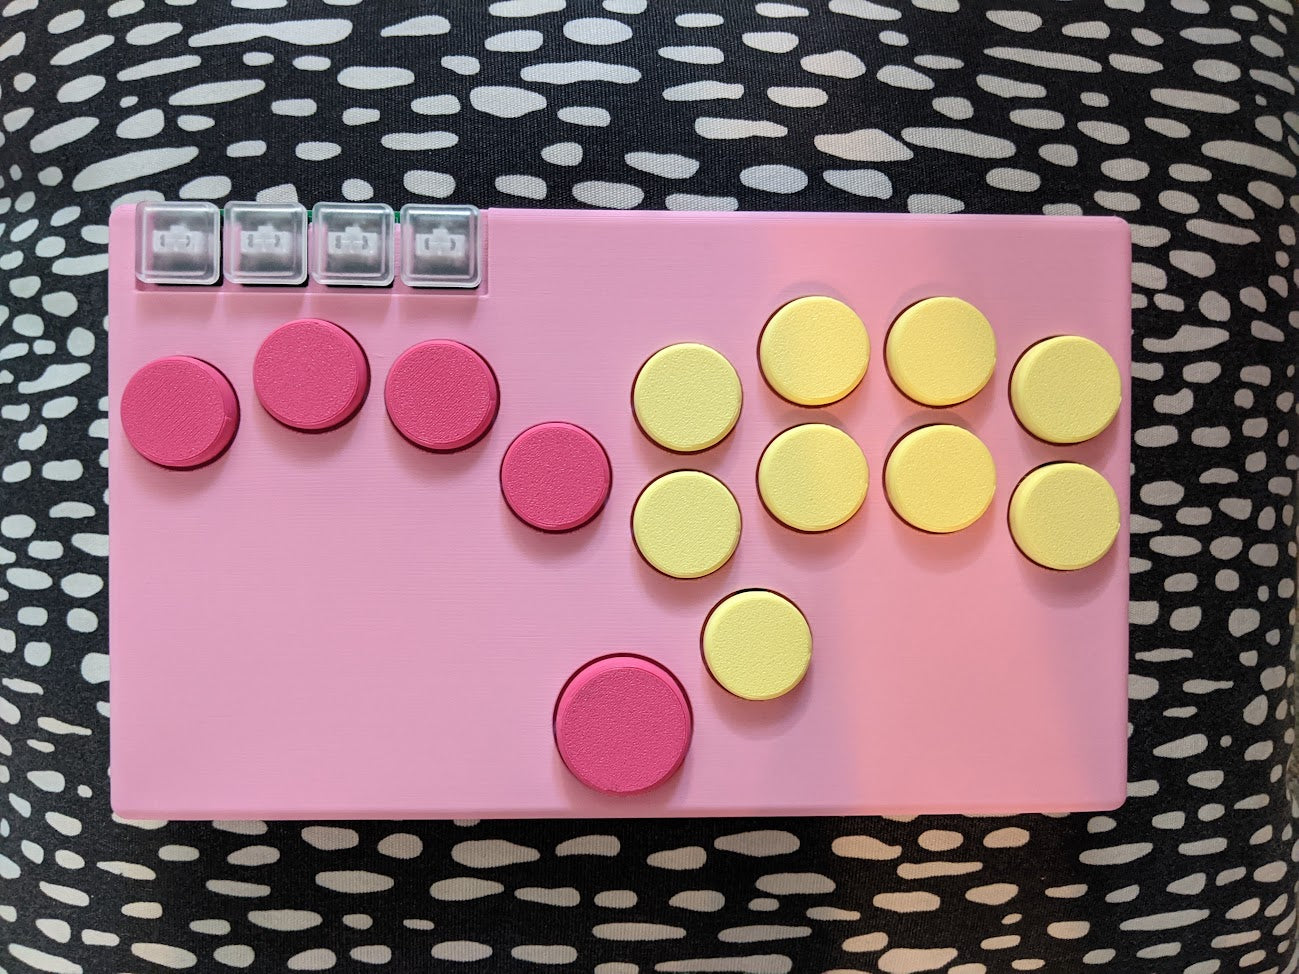 Pink case, magenta left side buttons, light yellow right side buttons, transparent menu buttons